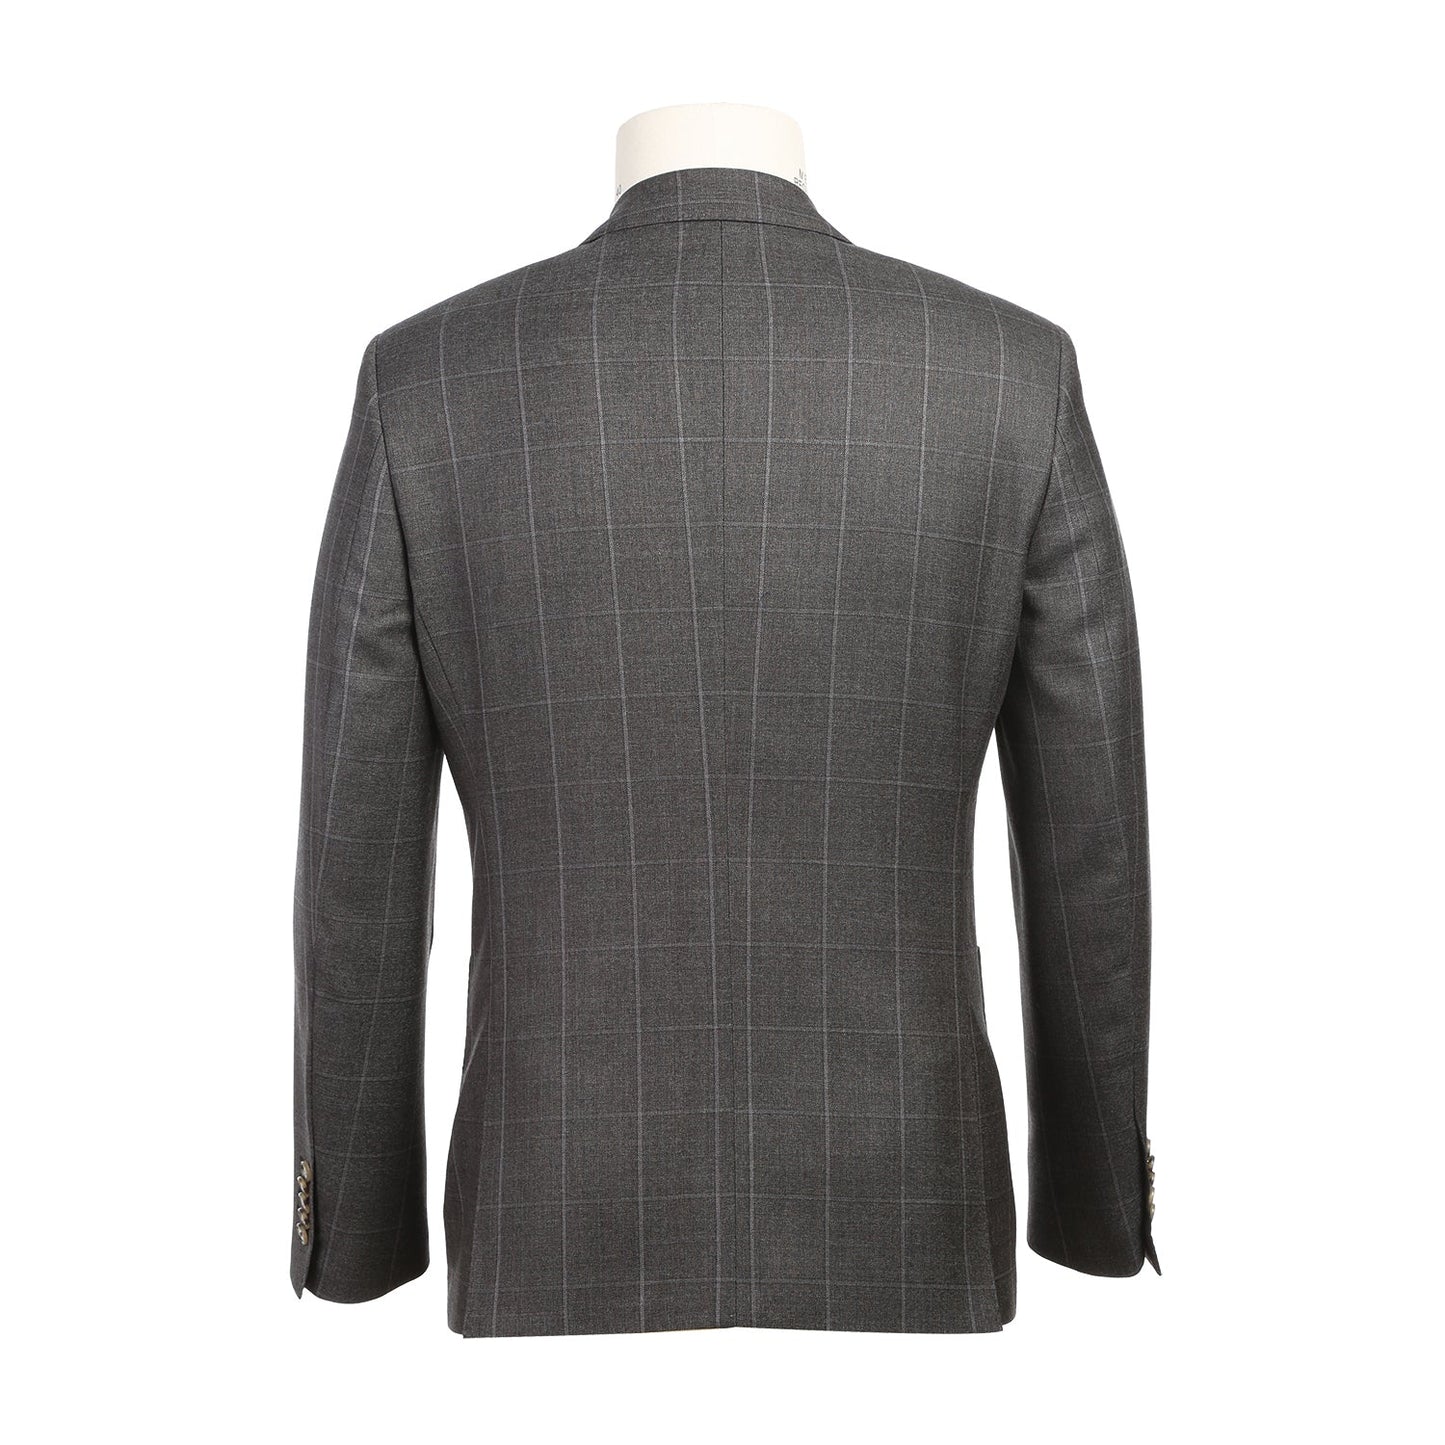 EL82-61-095 Brown Windowpane Wool Suit